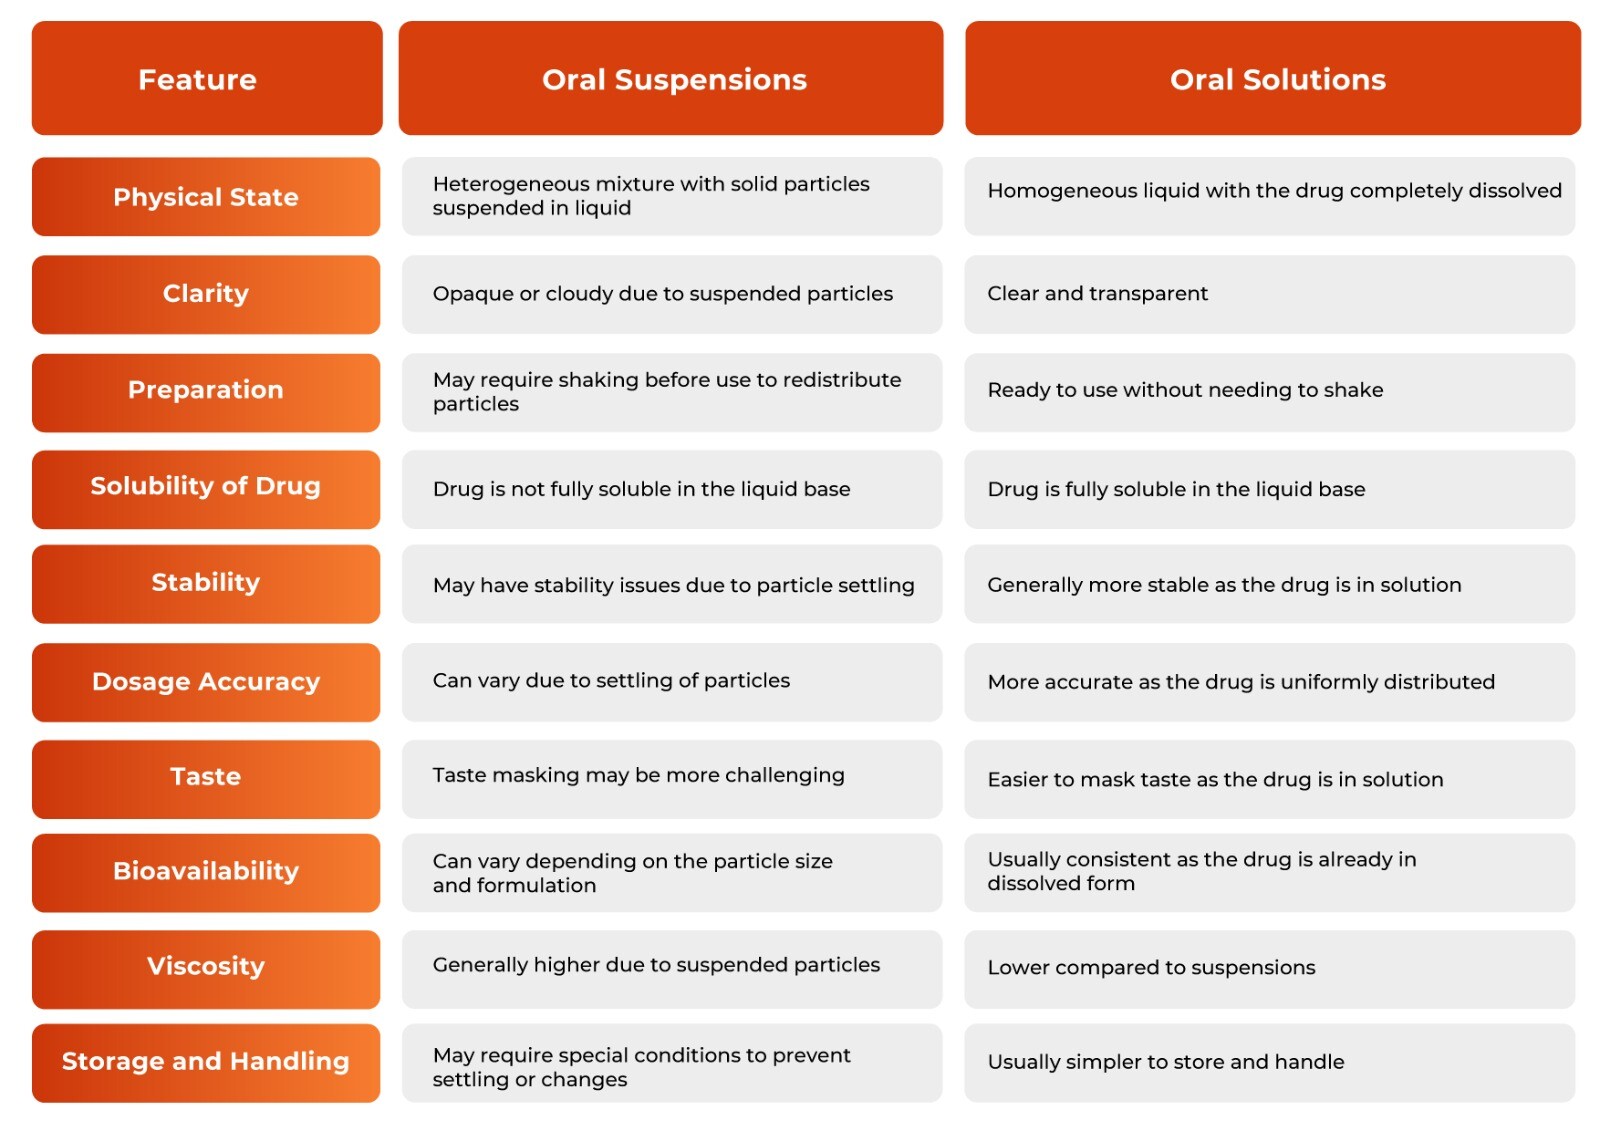 Oral suspensions vs Oral solutions